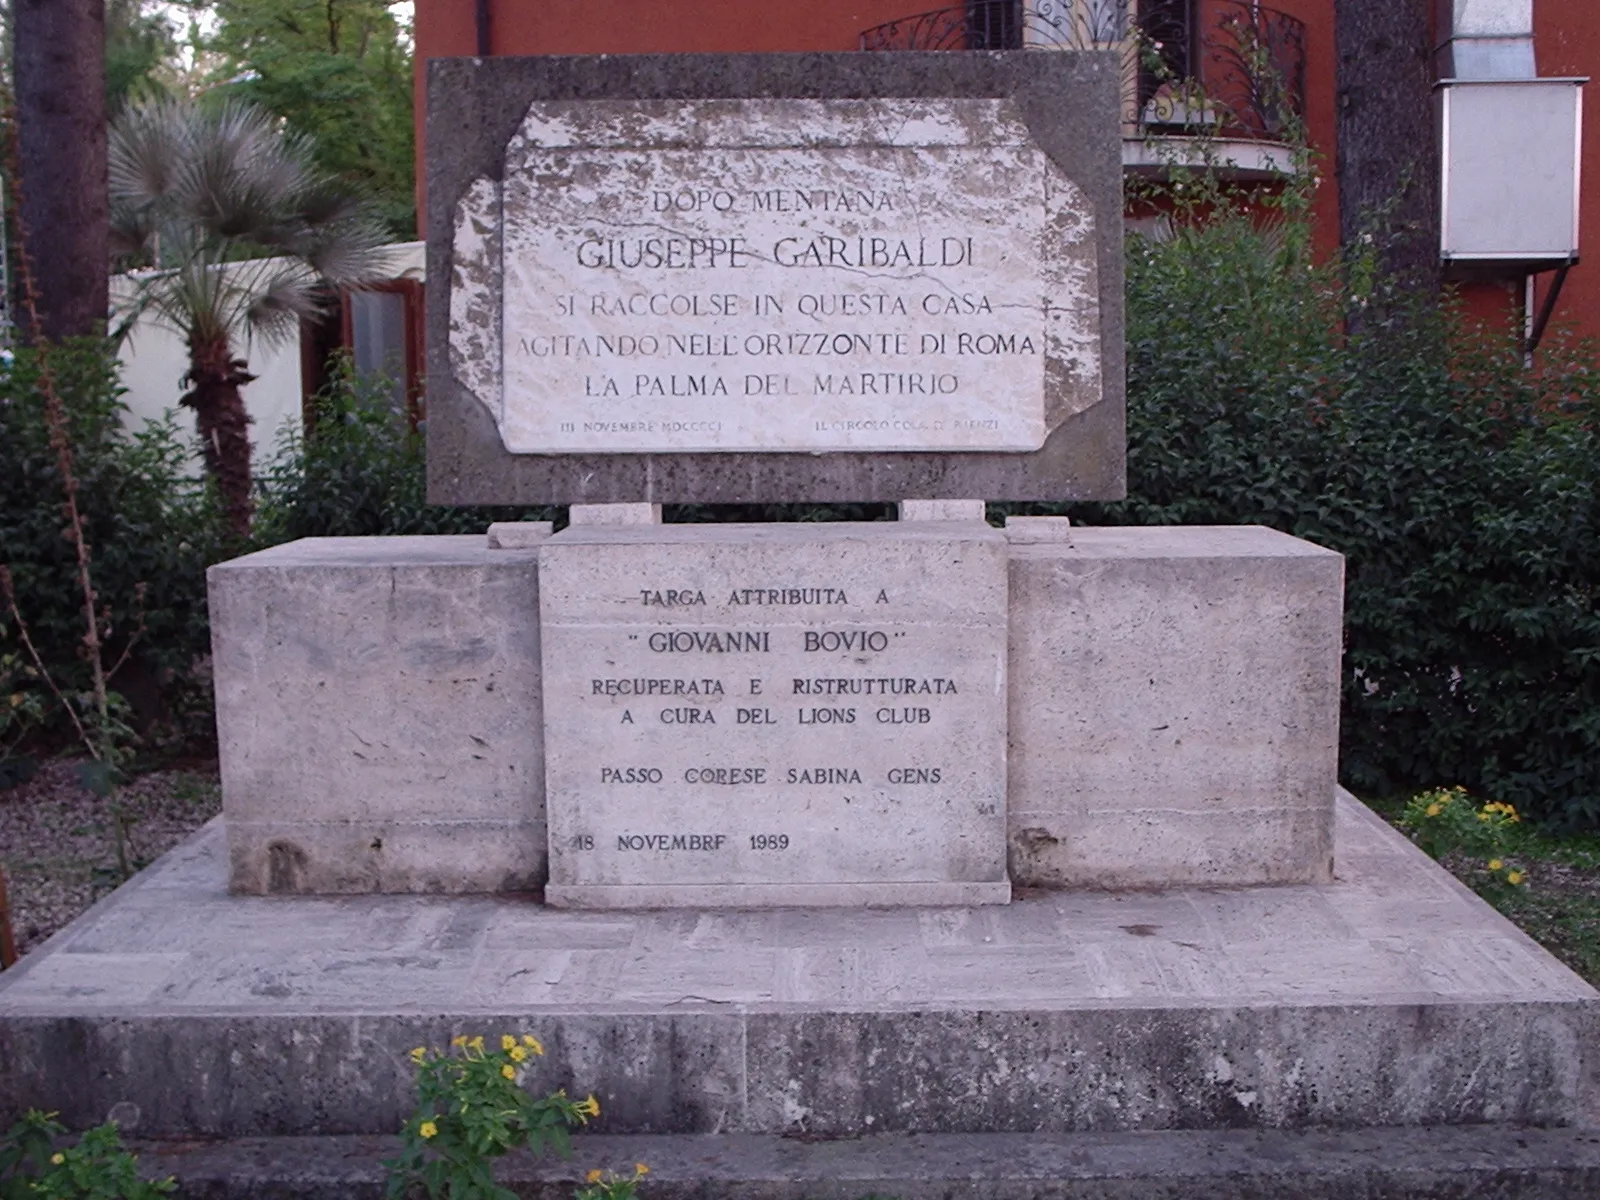 Photo showing: Targa commemorativa del passaggio di Giuseppe Garibaldi a Passo Corese